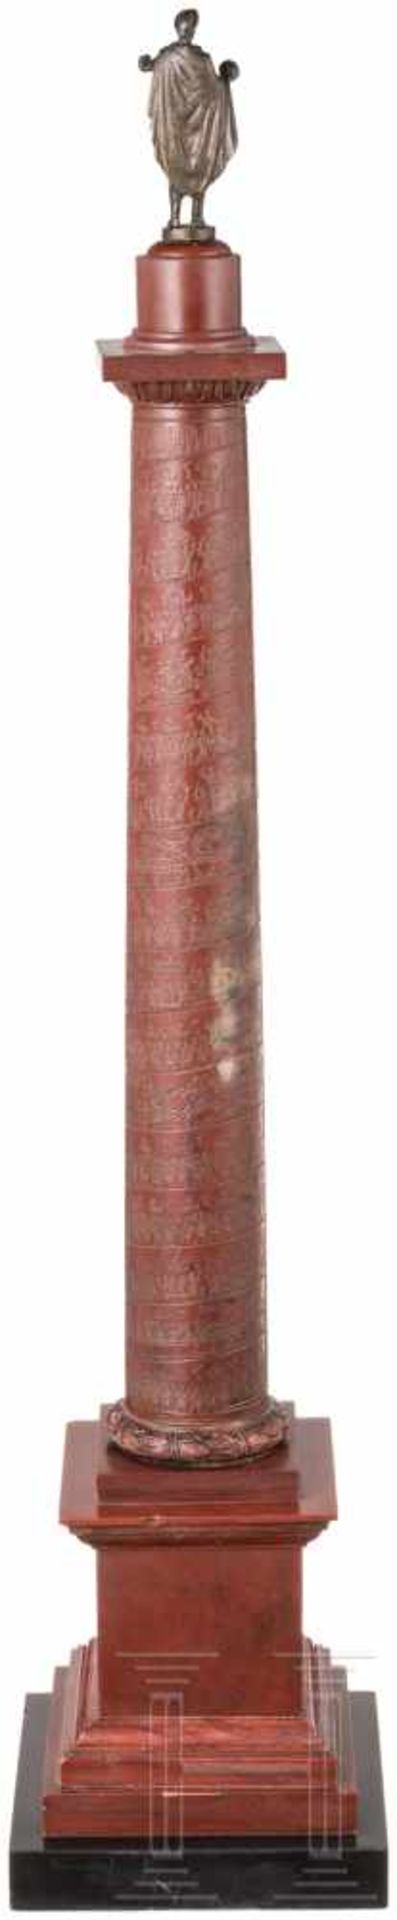 Idealtypische Miniatur der Mark-Aurel-Säule in Rom, Italien, fortgeschrittene 1. Hälfte 19. Jhdt. - Bild 2 aus 4